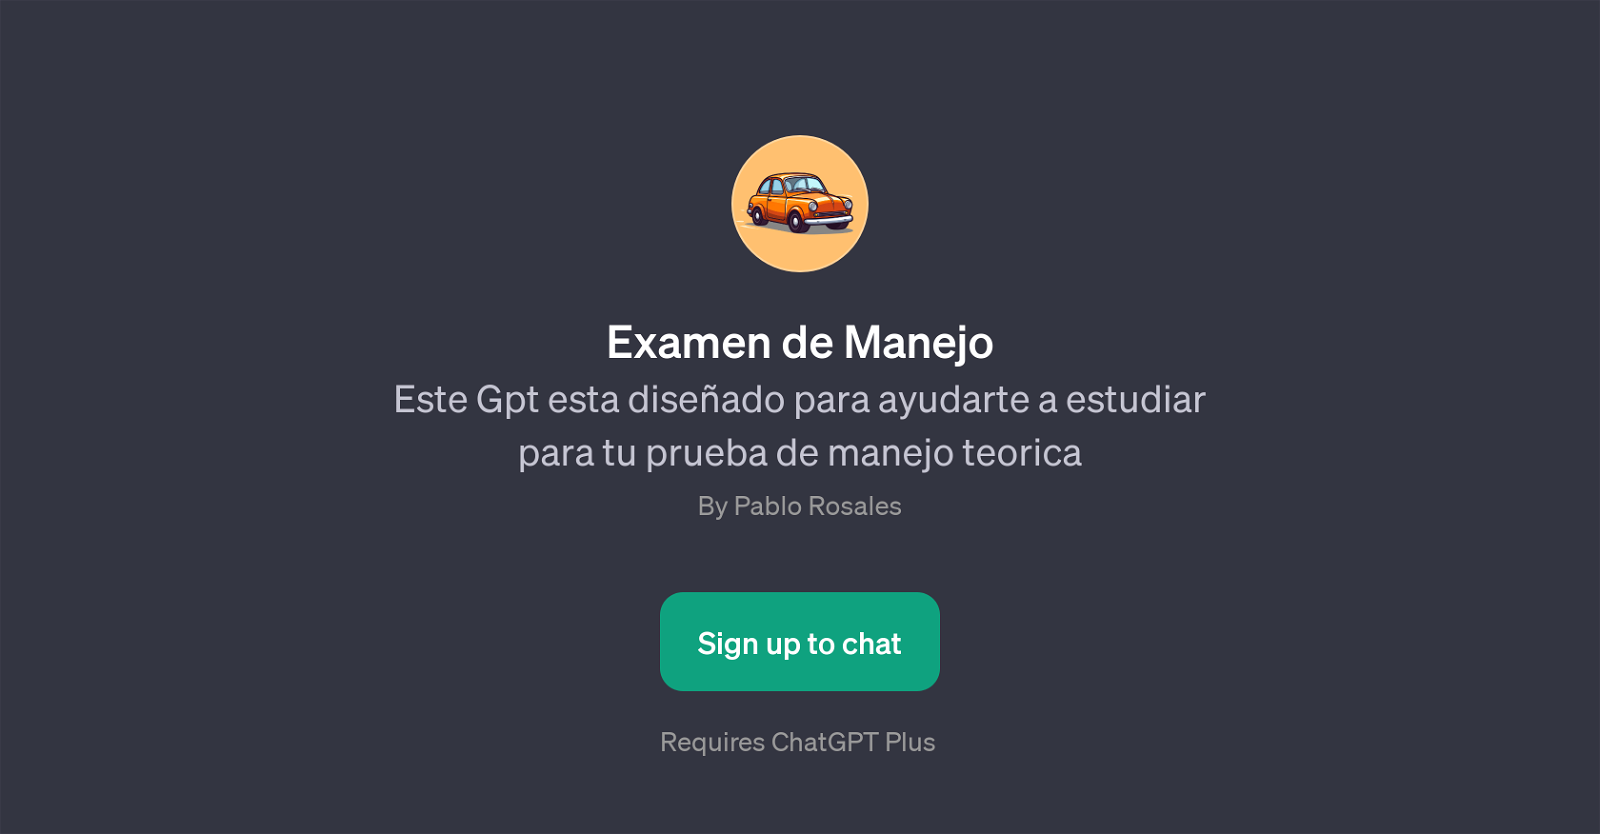 Examen de Manejo website